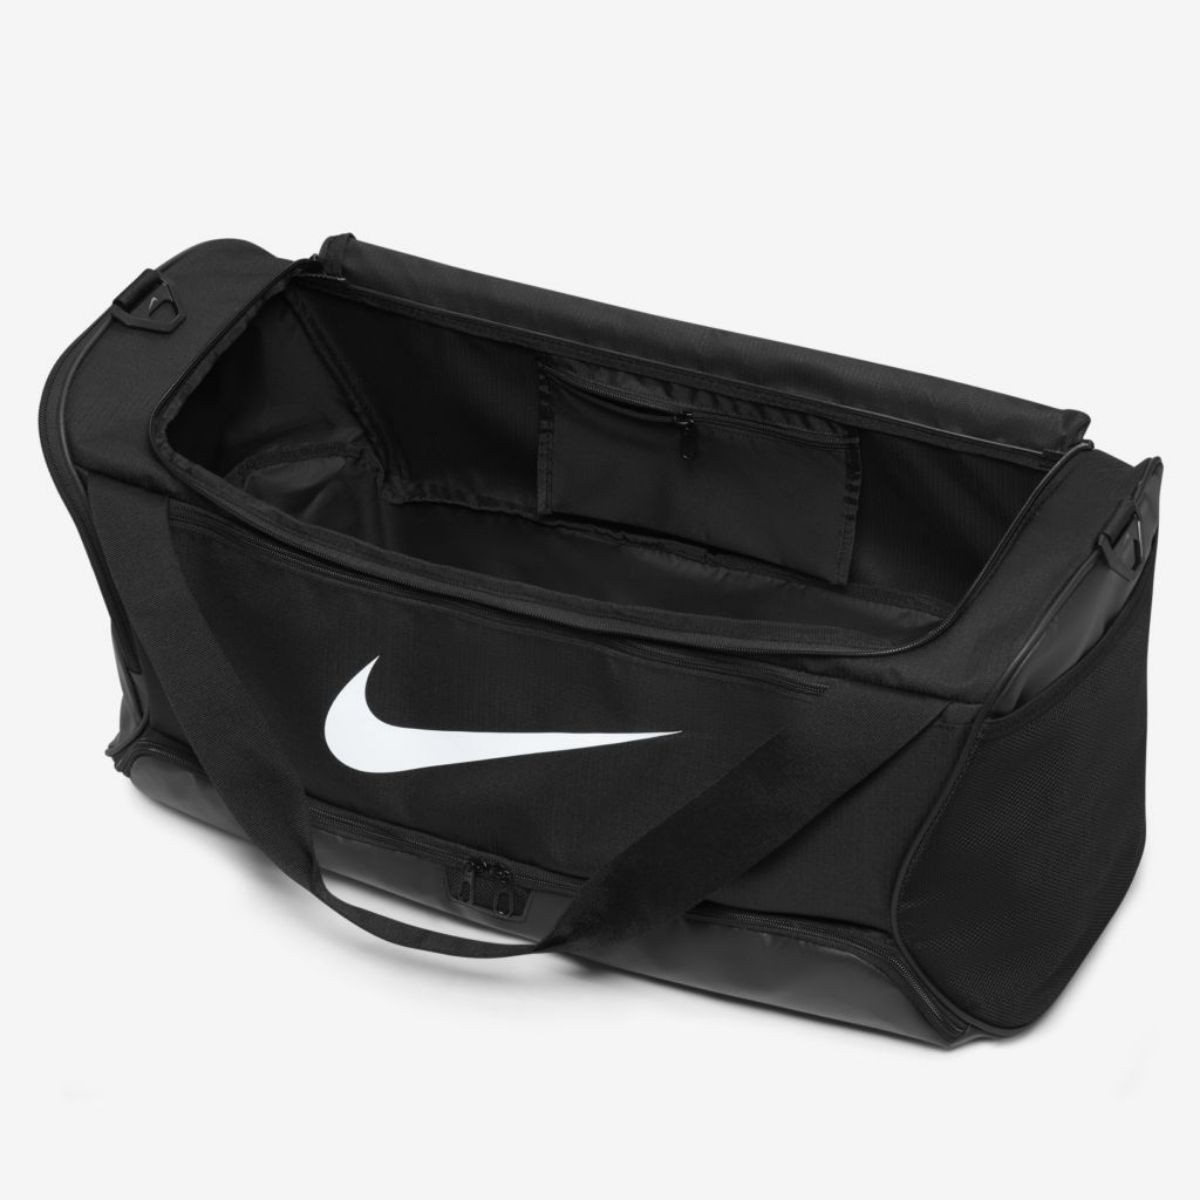 Bolsa Nike Brasilia Medium Duffel 9.5